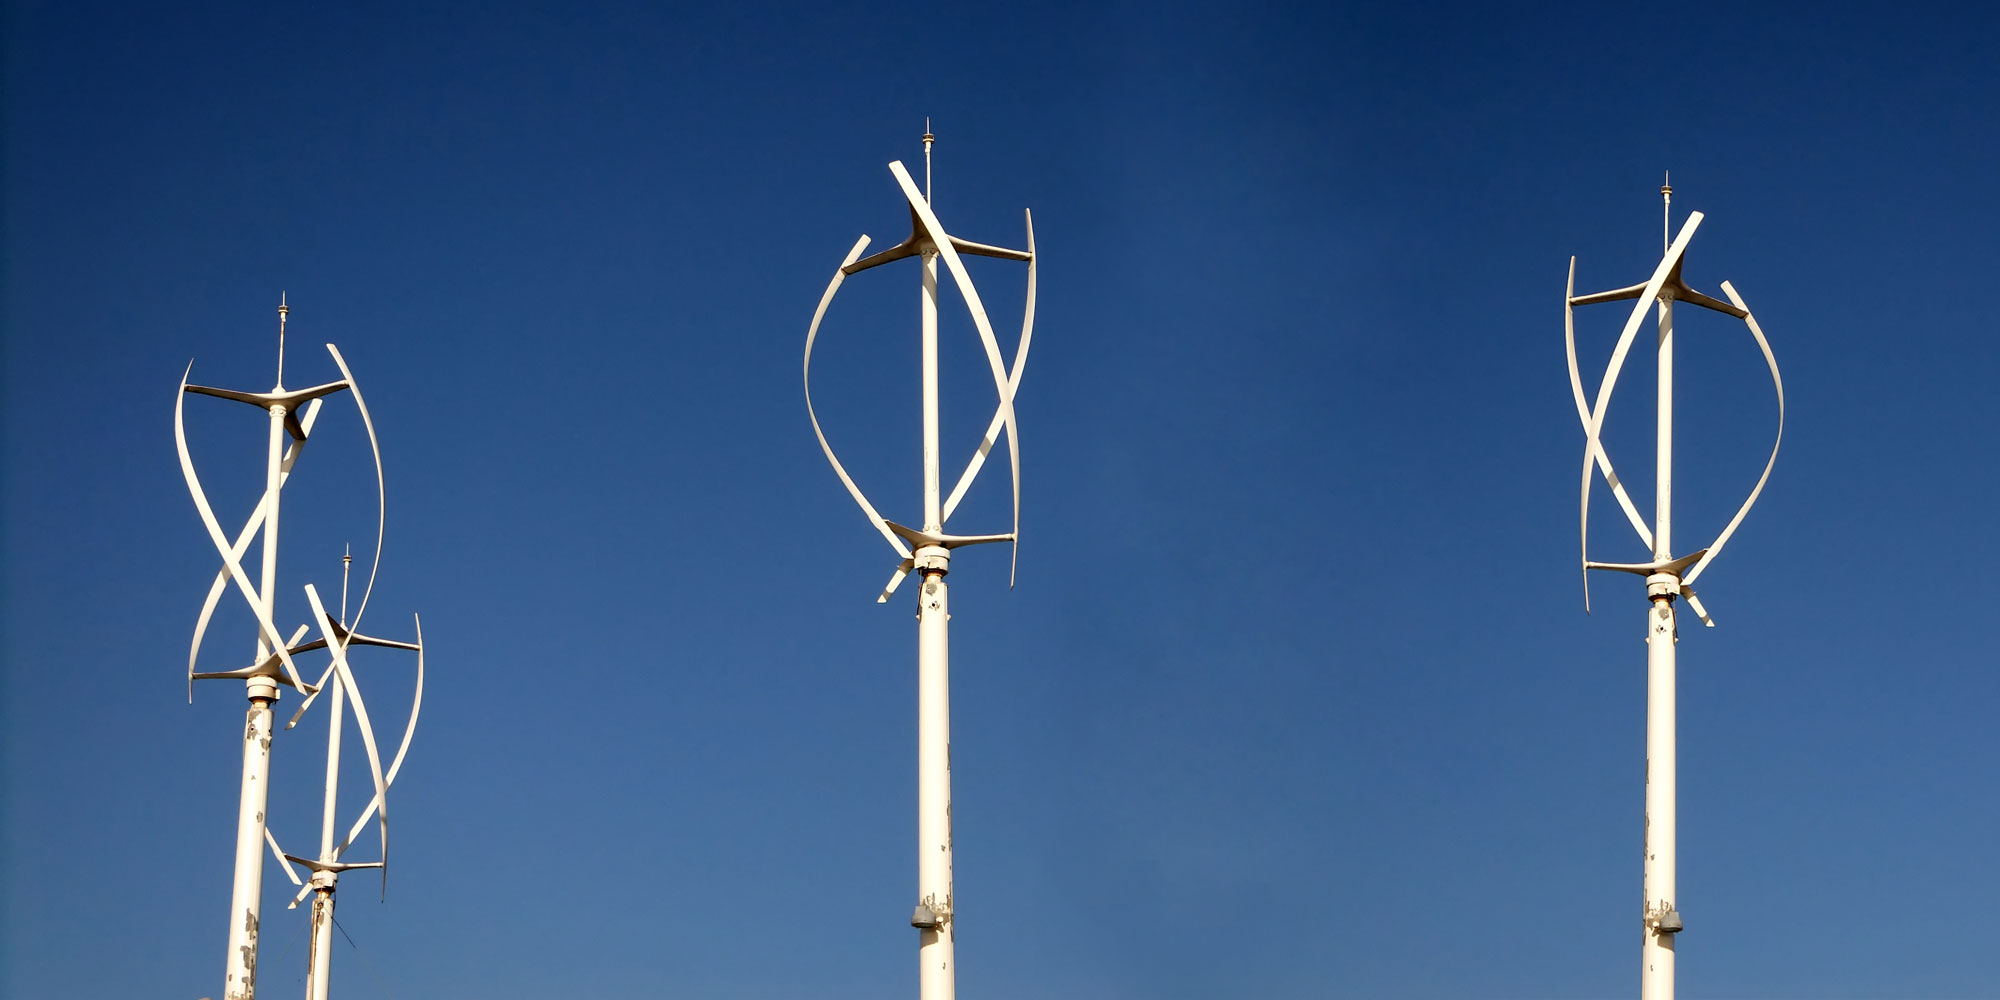 Vertikale Windkraftanlagen: Welche gibt es? Was können sie?